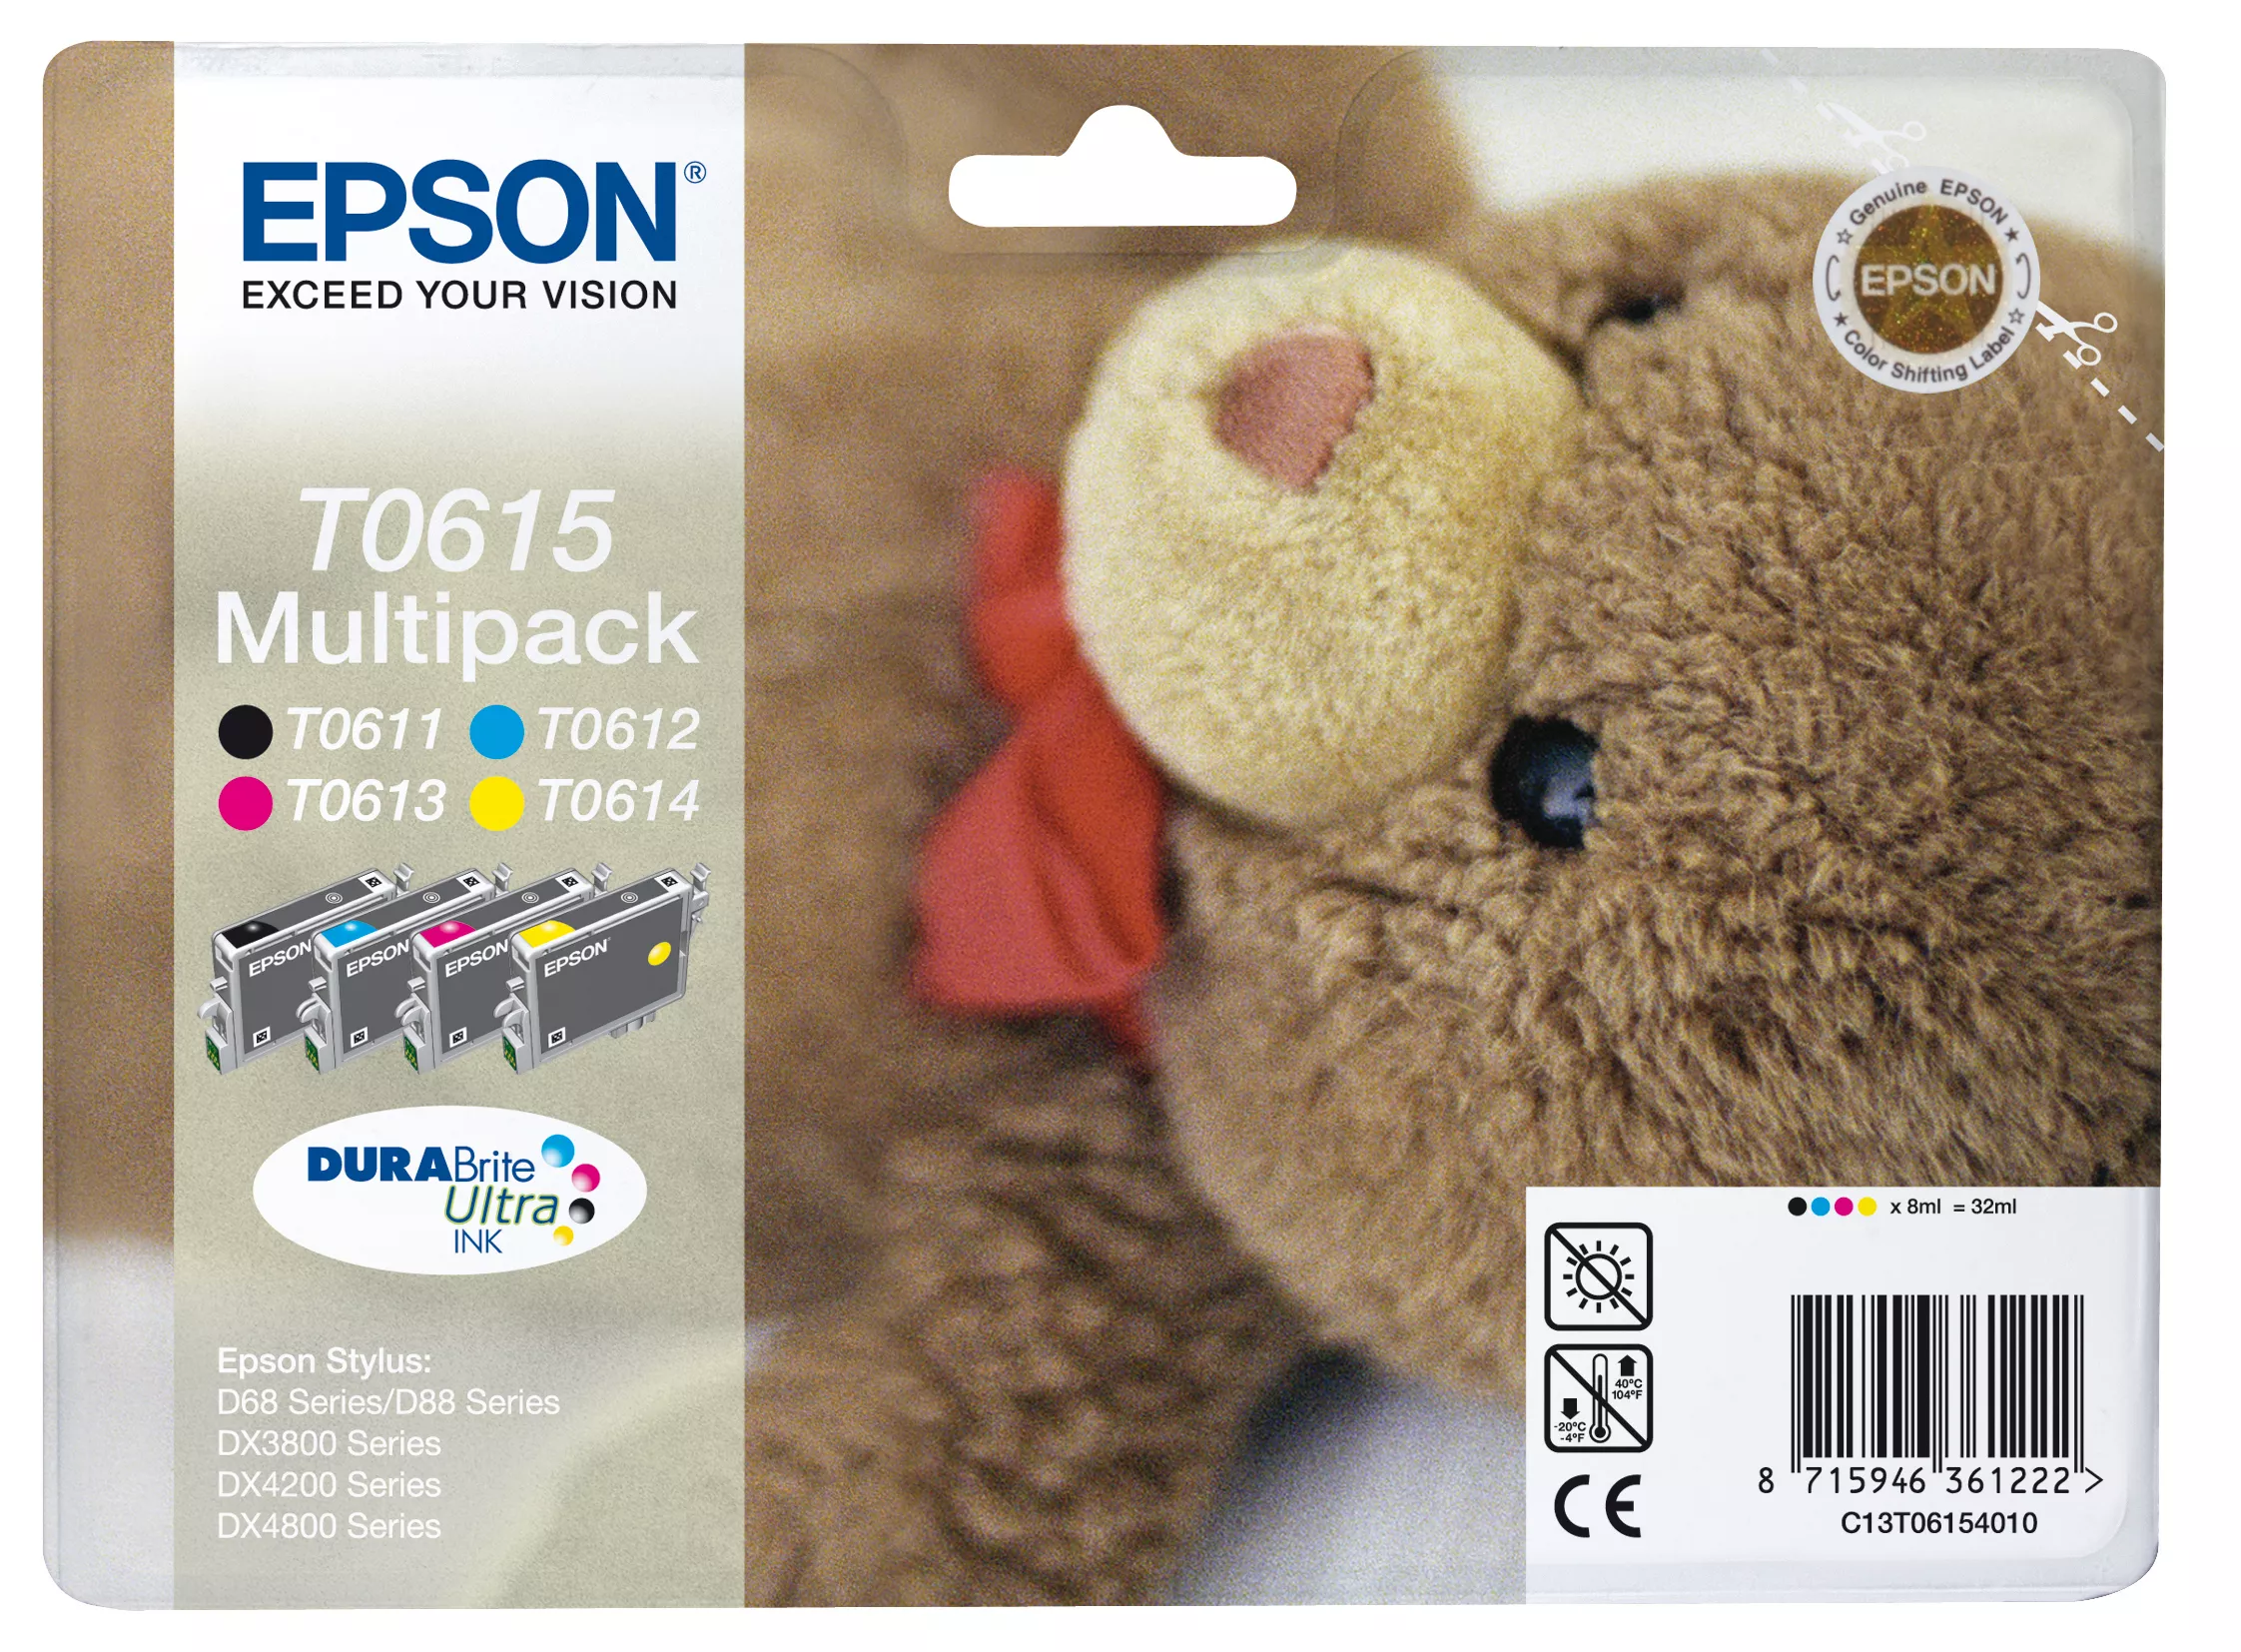 Vente Epson Teddybear Multipack "Ourson" (T0615) - Encres Epson au meilleur prix - visuel 2